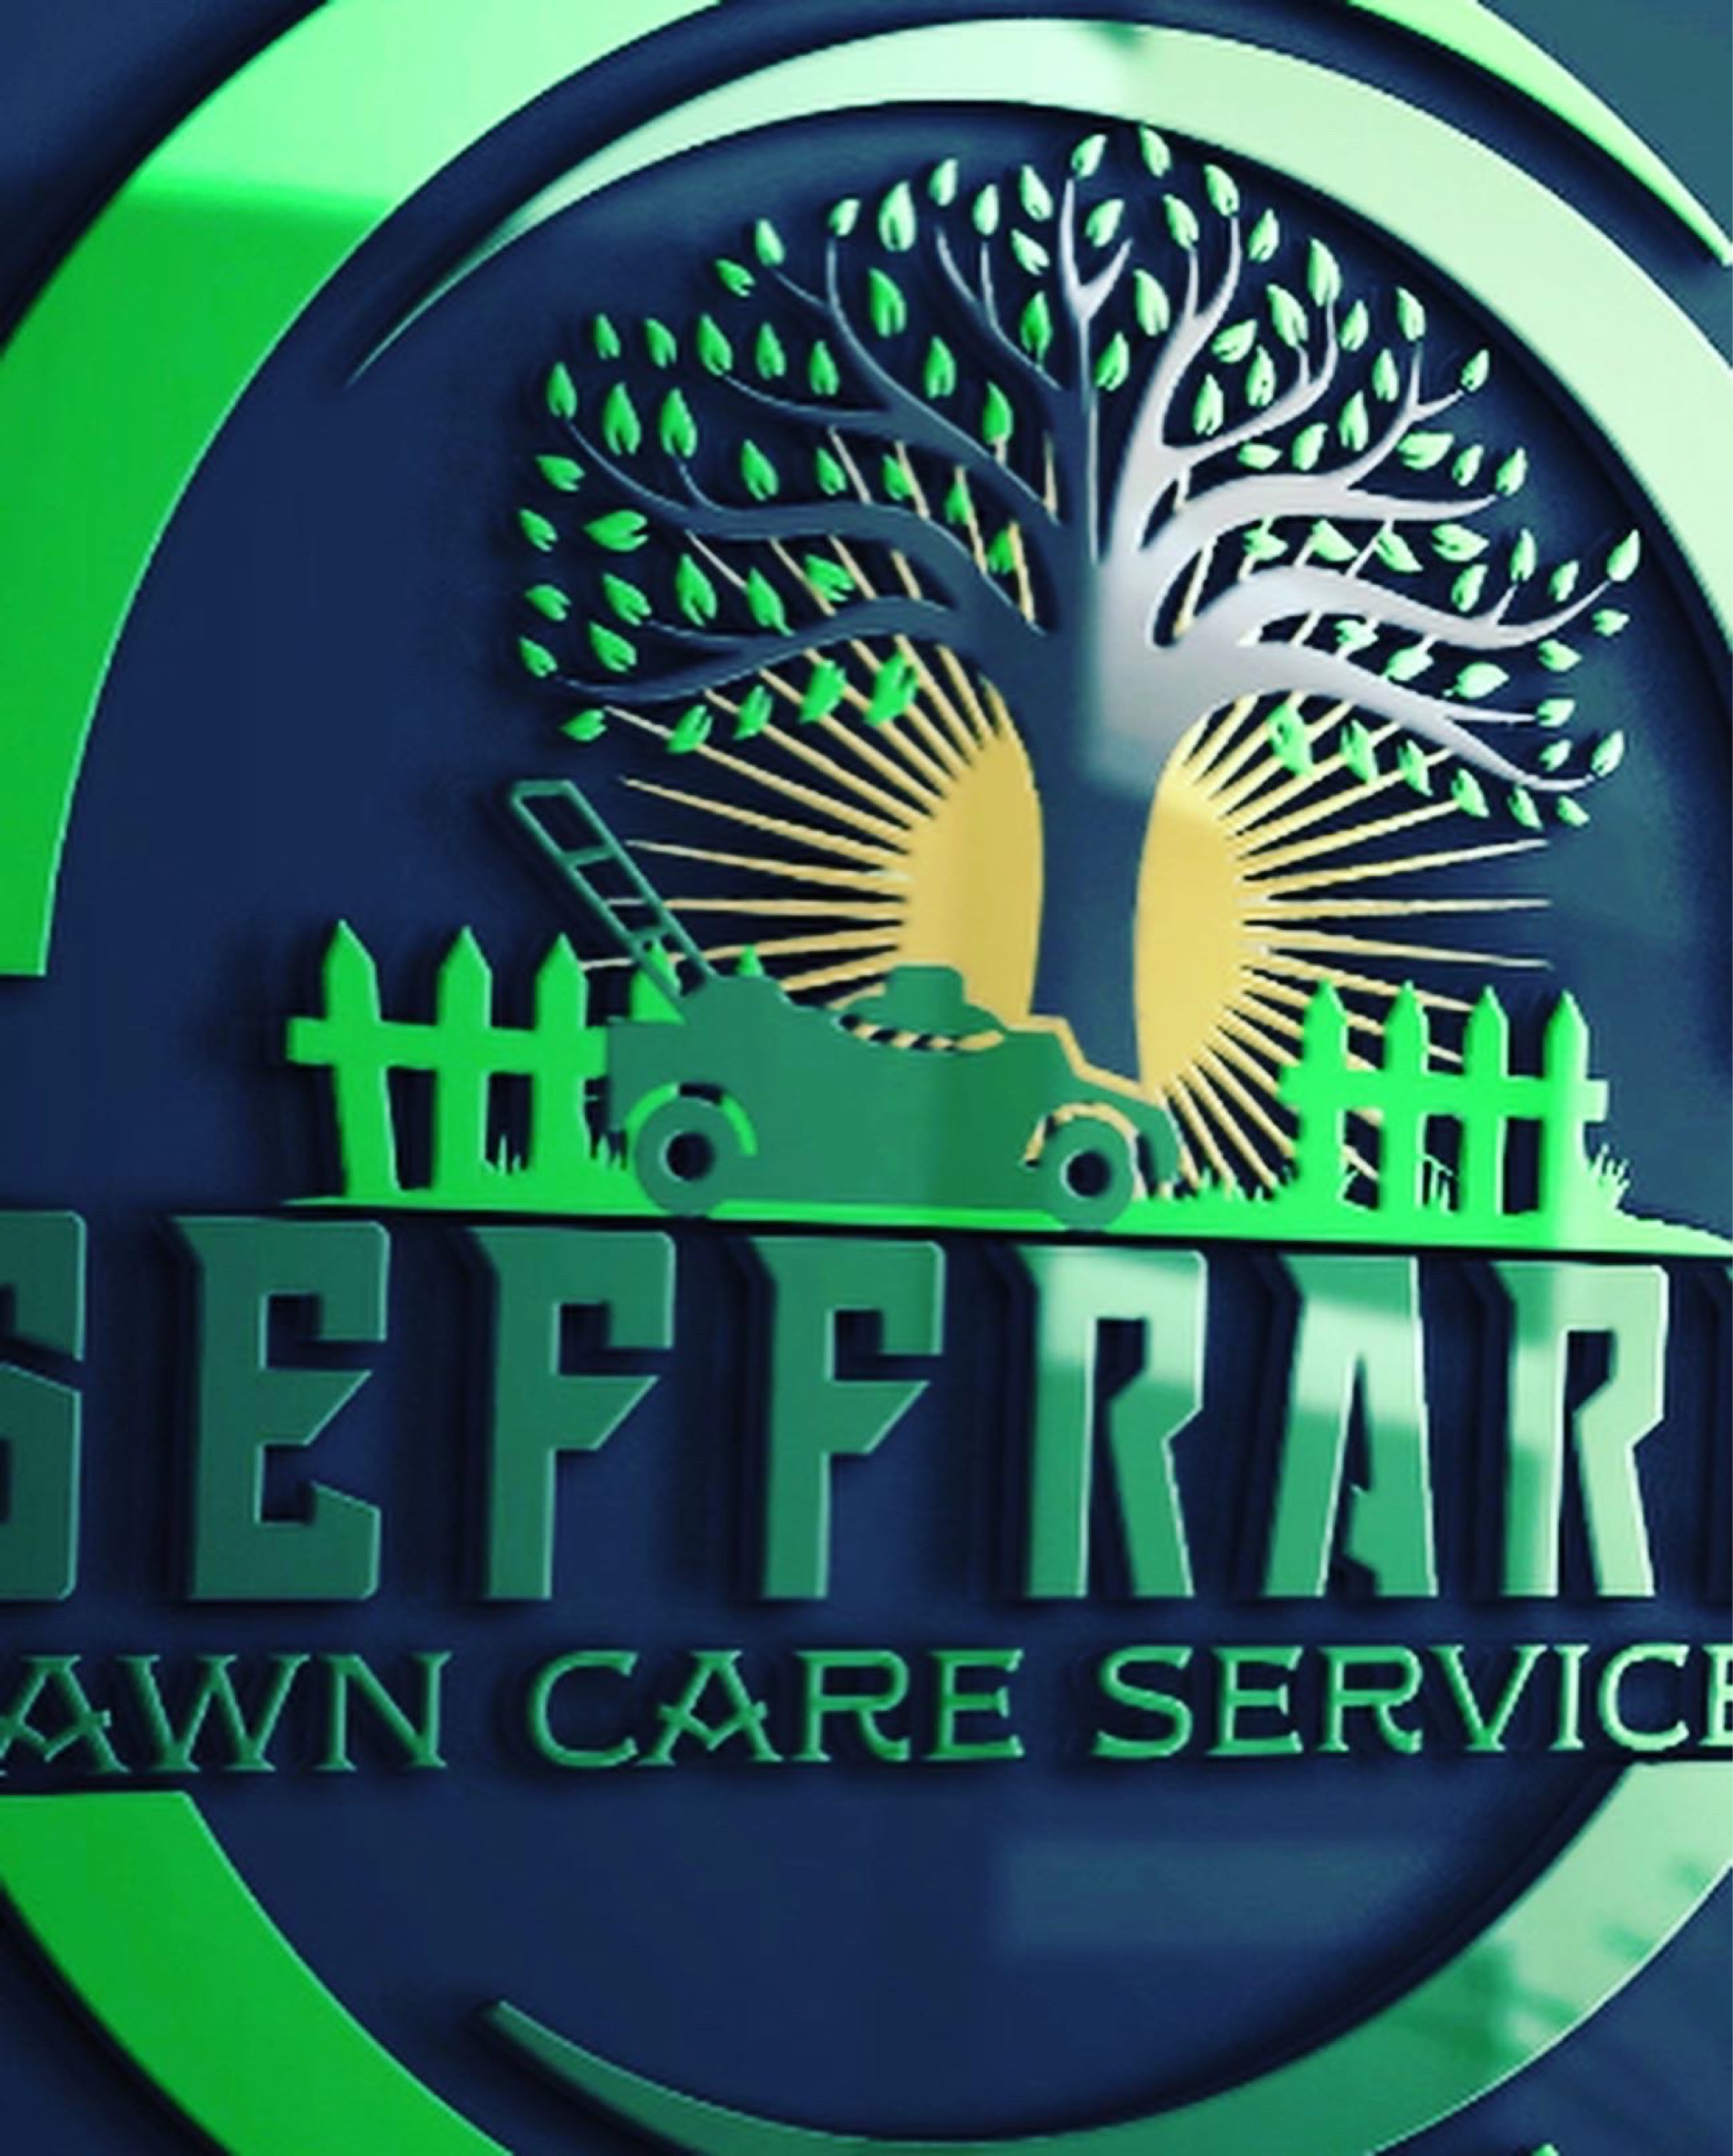 Geffrard Lawn Care Services Logo